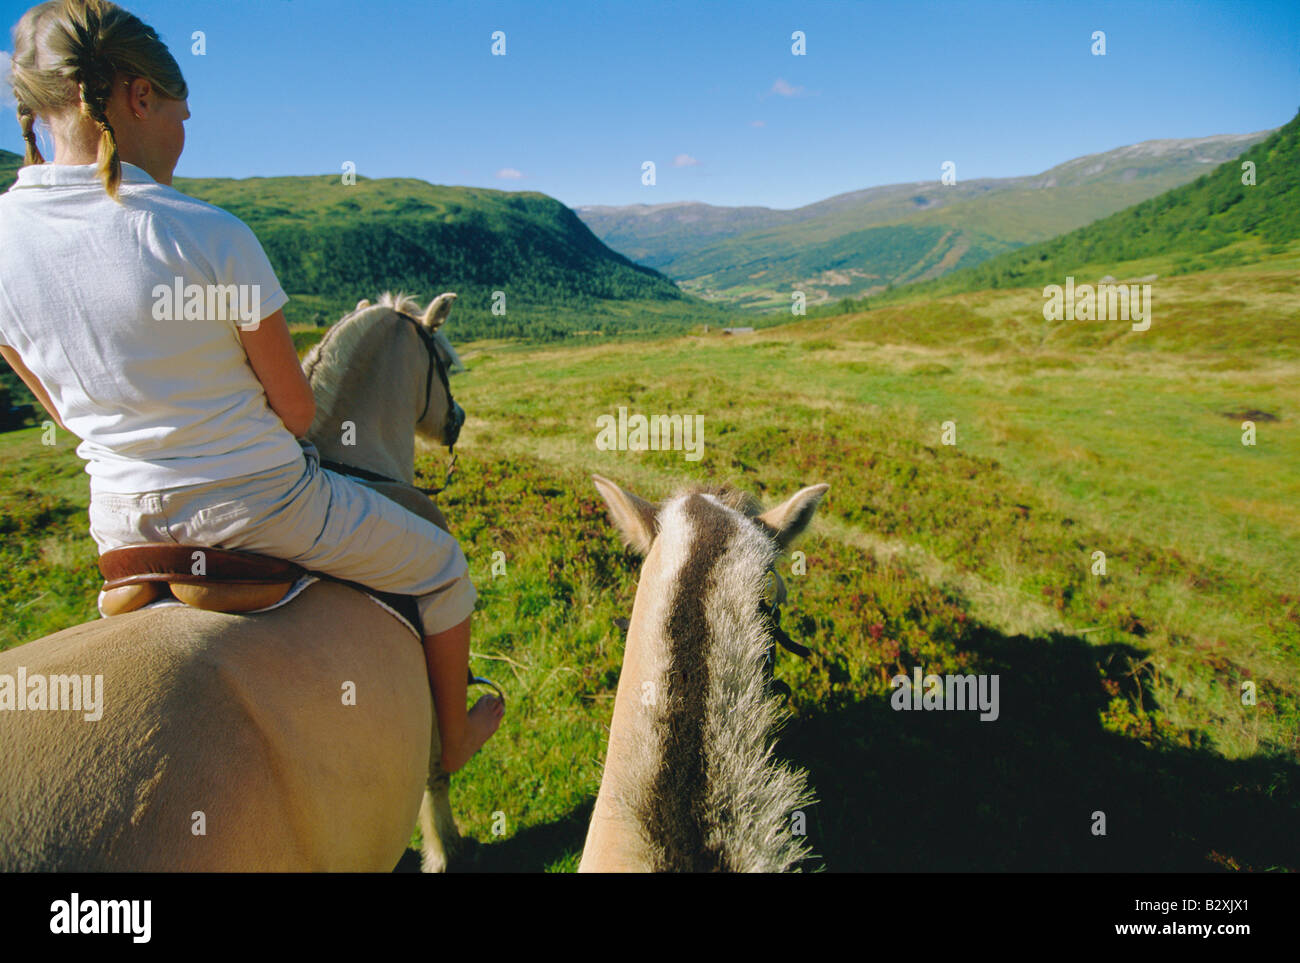 Woman outdoors riding horse dans emplacement panoramique avec un autre cheval à ses côtés Banque D'Images